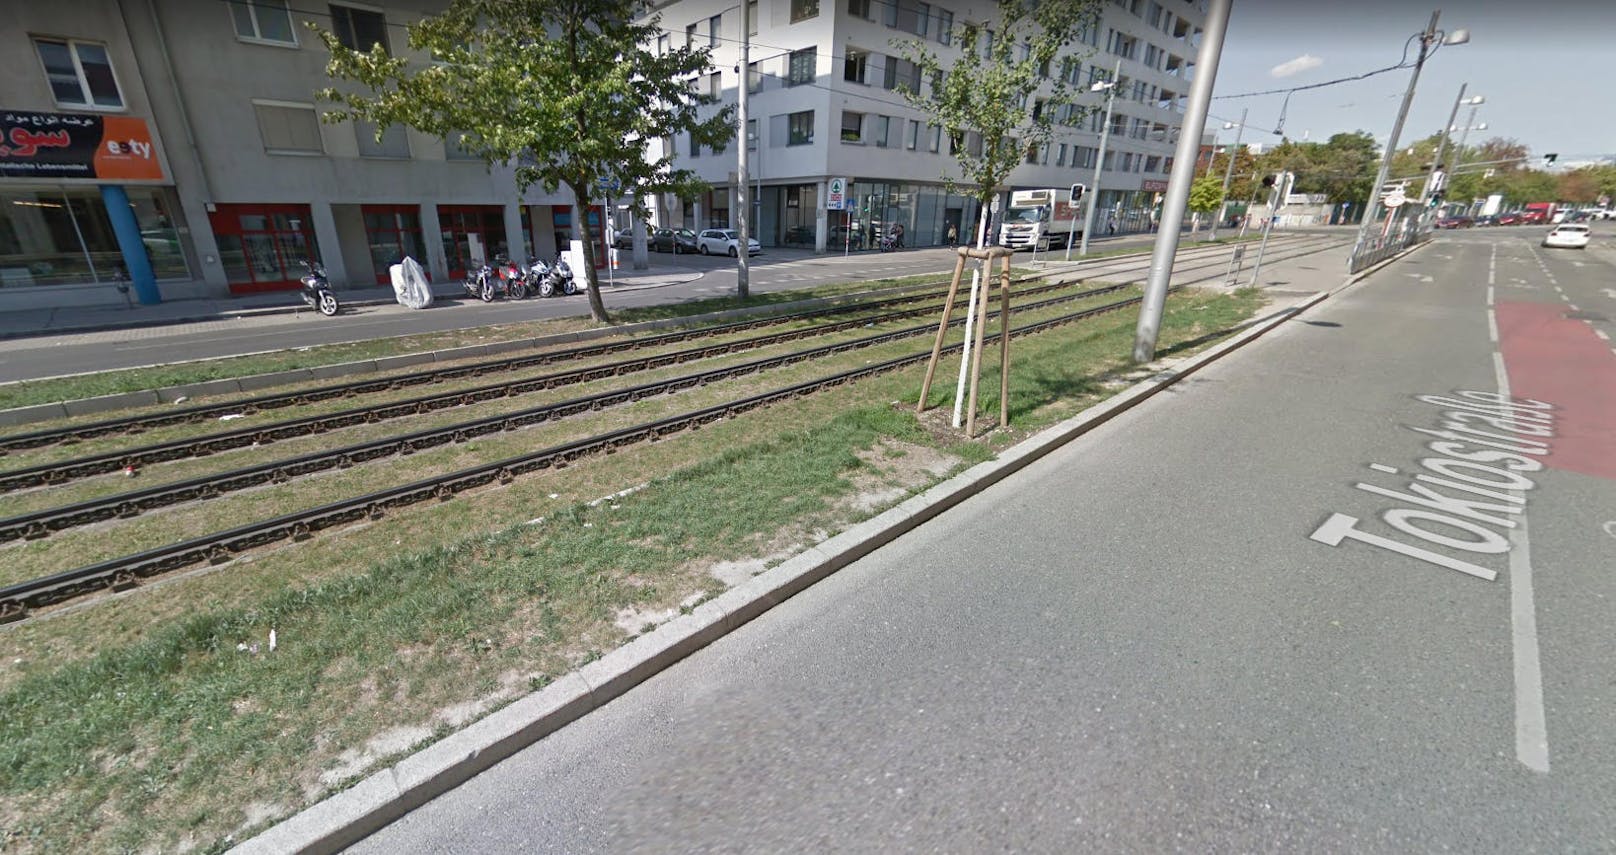 Denn die Fahrt endete auf einem Gleiskörper in der Tokiostraße (22. Bezirk). Verletzte gab es keine, berichtet Daniel Fürst.